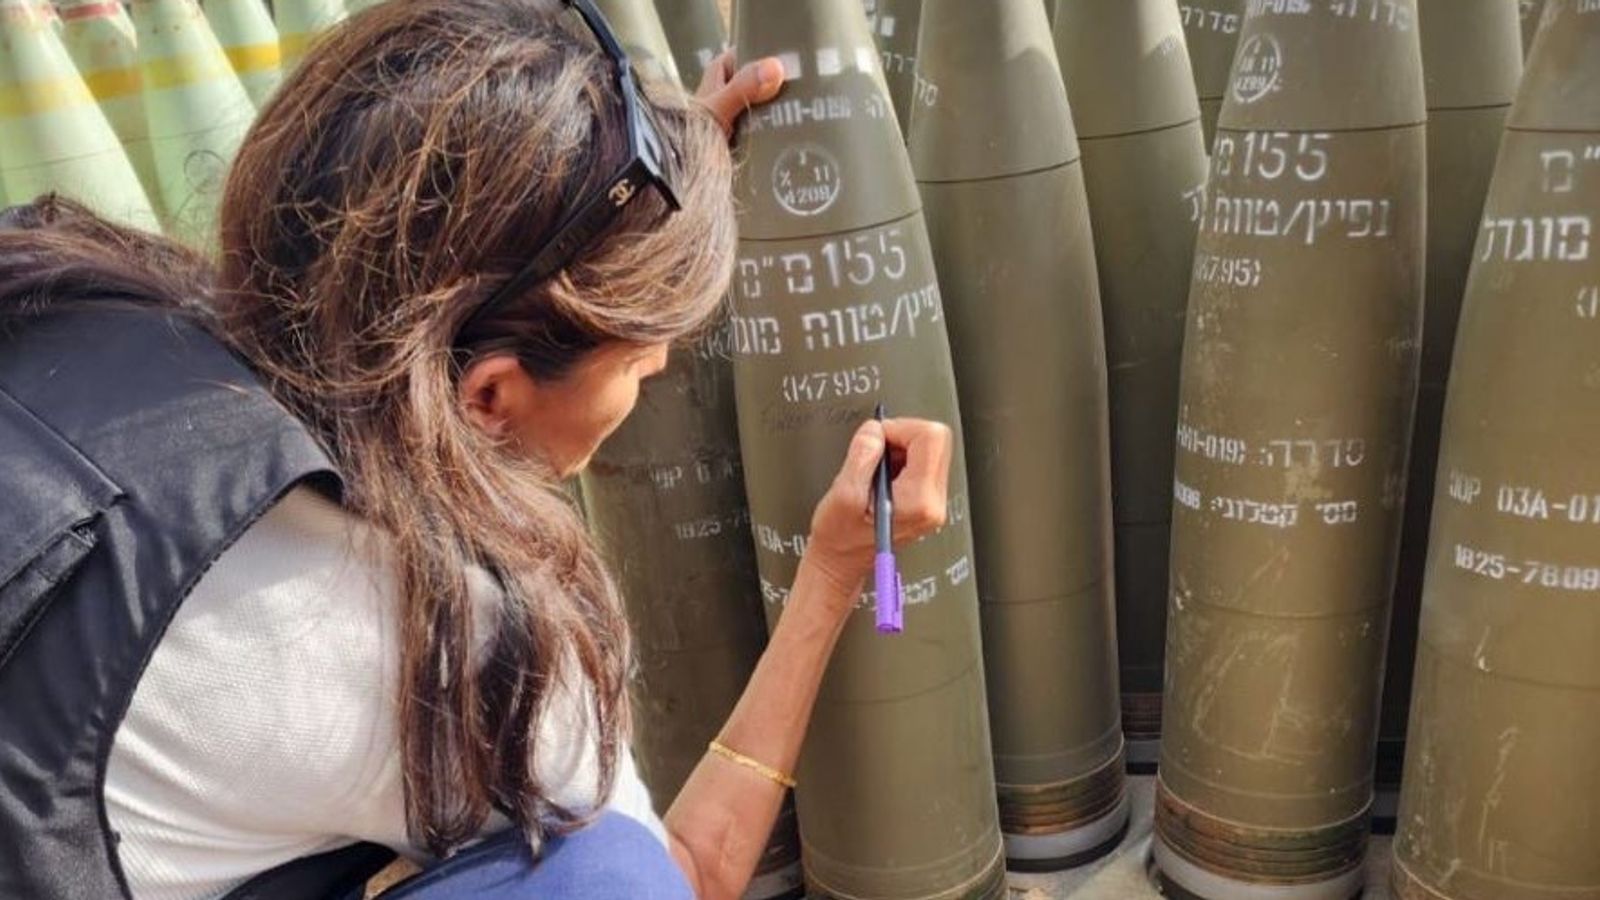 Ники Хейли пише „довършете ги“ върху снаряда на IDF по време на посещение в Израел